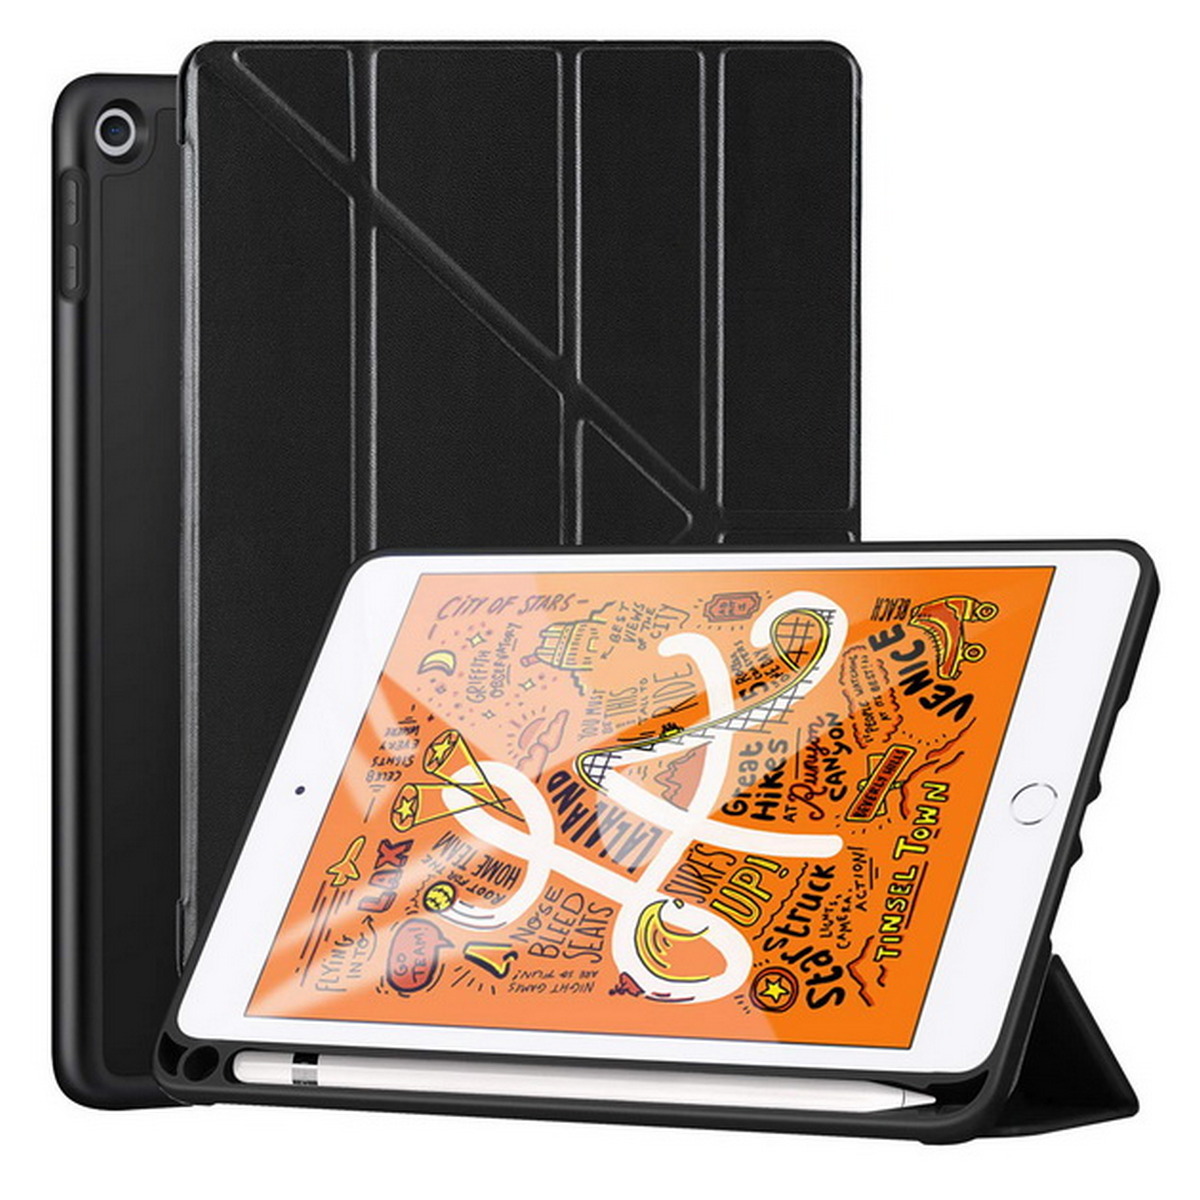 Lumi Case for iPad Mini 2019 (Black) CAS-TK110-IPDM19-01